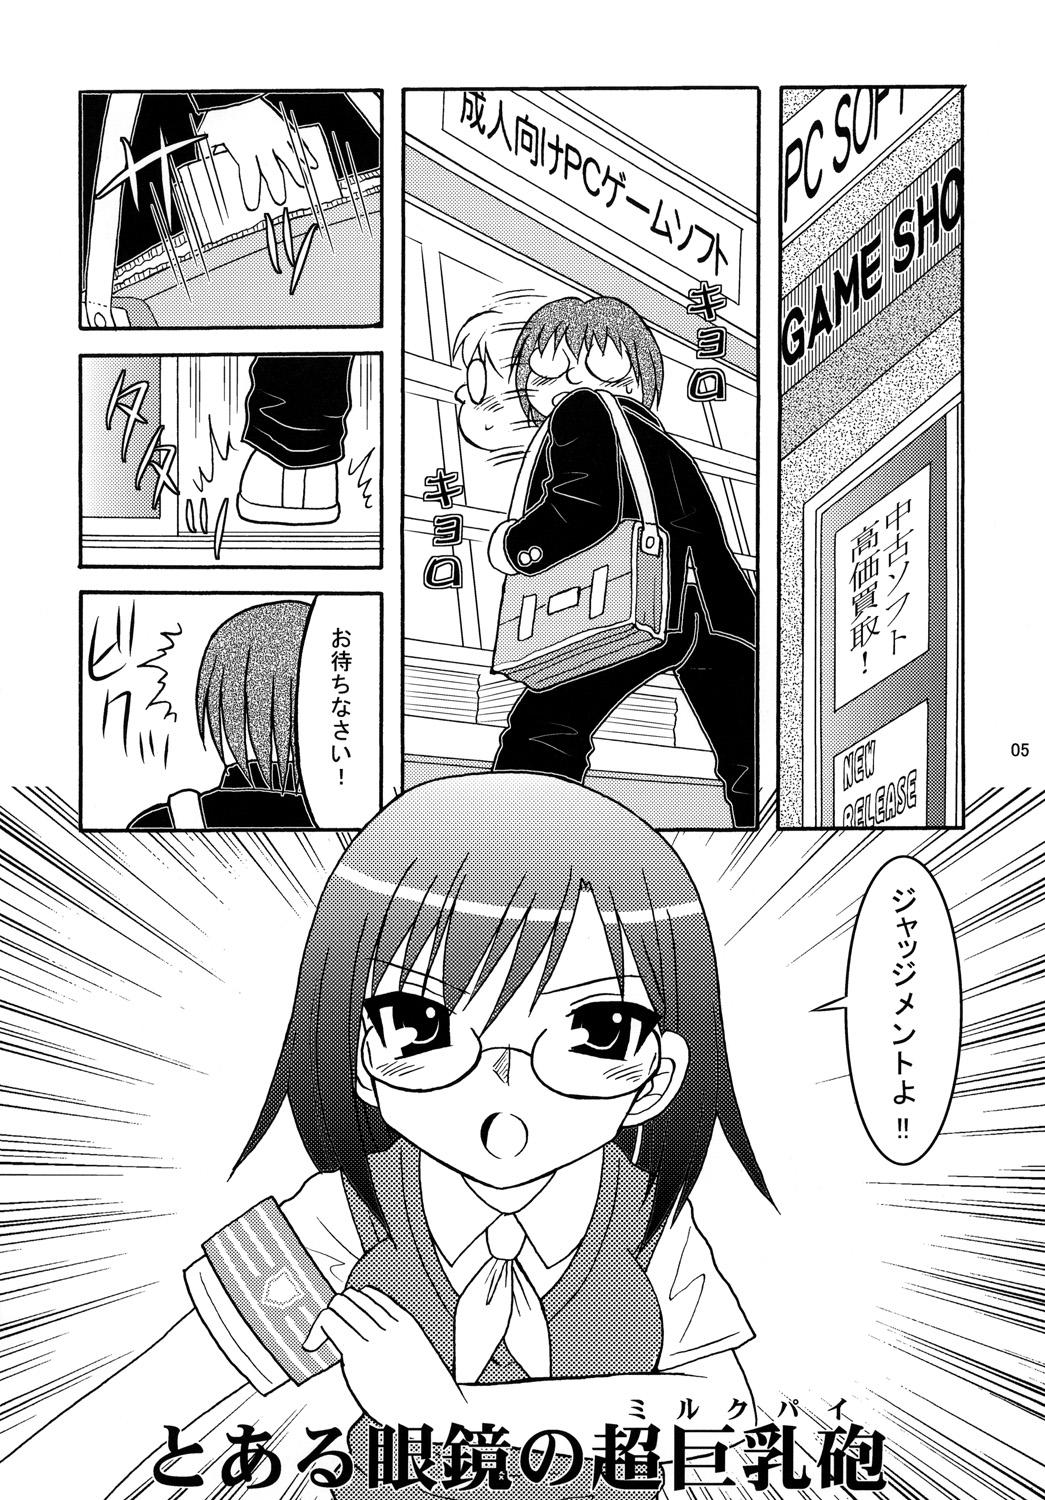 Pickup Toaru Megane no Chou Kyonyuu Hou - Toaru kagaku no railgun Anime - Page 4